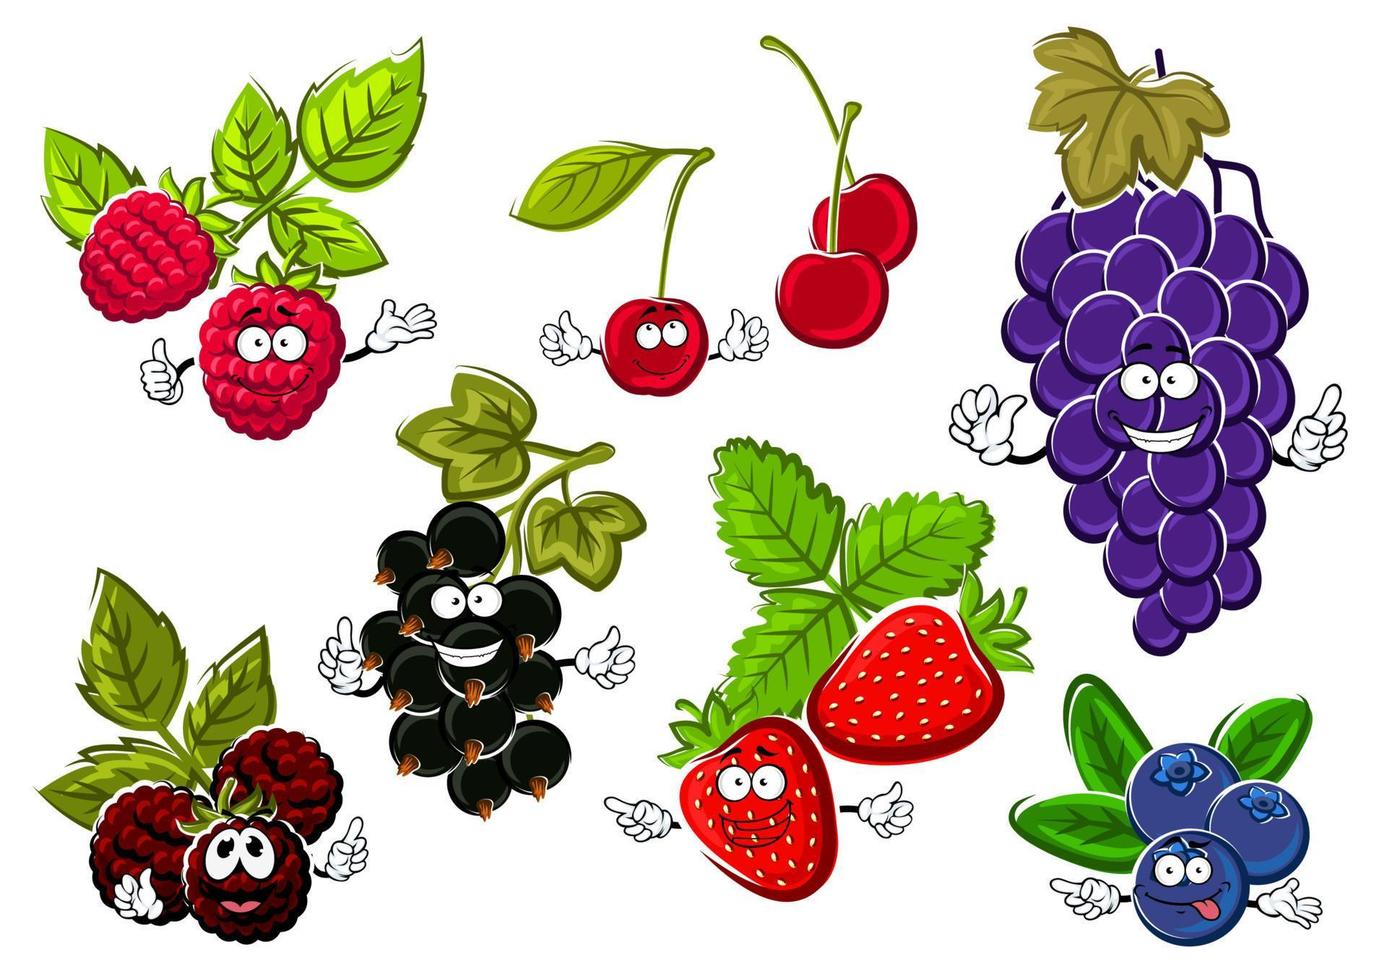 Gartenbeerenfrüchte glückliche Charaktere vektor